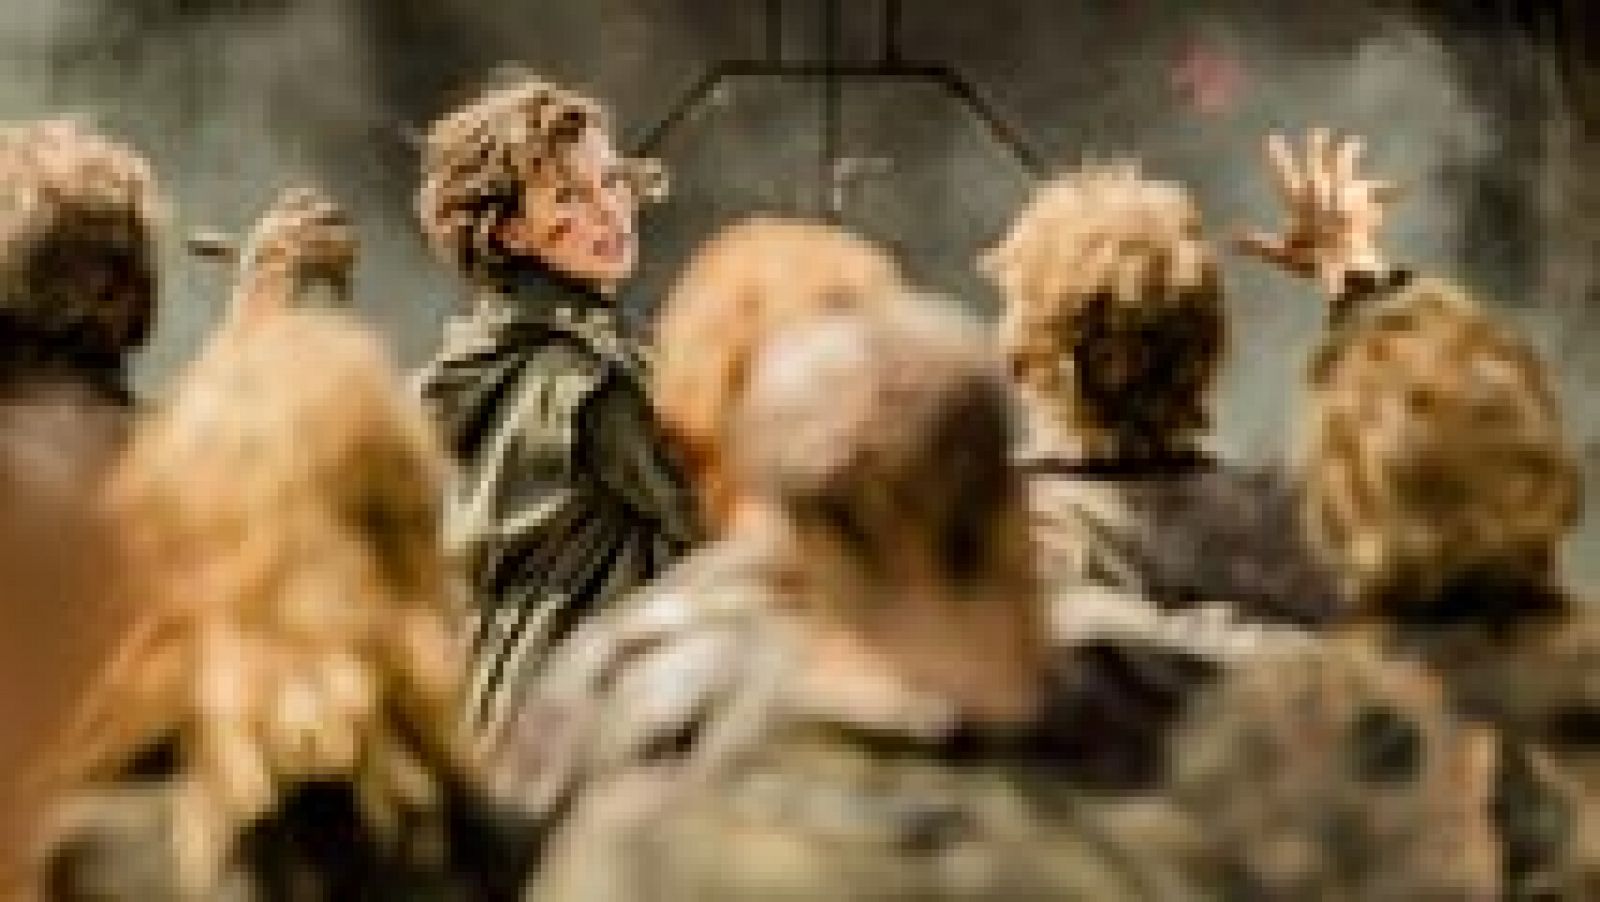 Este viernes 3 de febrero se estrena la última película de Resident Evil, la sexta entrega. Será la última de una larga saga que comenzó hace 14 años. Milla Jovovich se meterá por última vez en la piel de 'Alice' para intentar salvar al mundo del apocalipsis zombie.